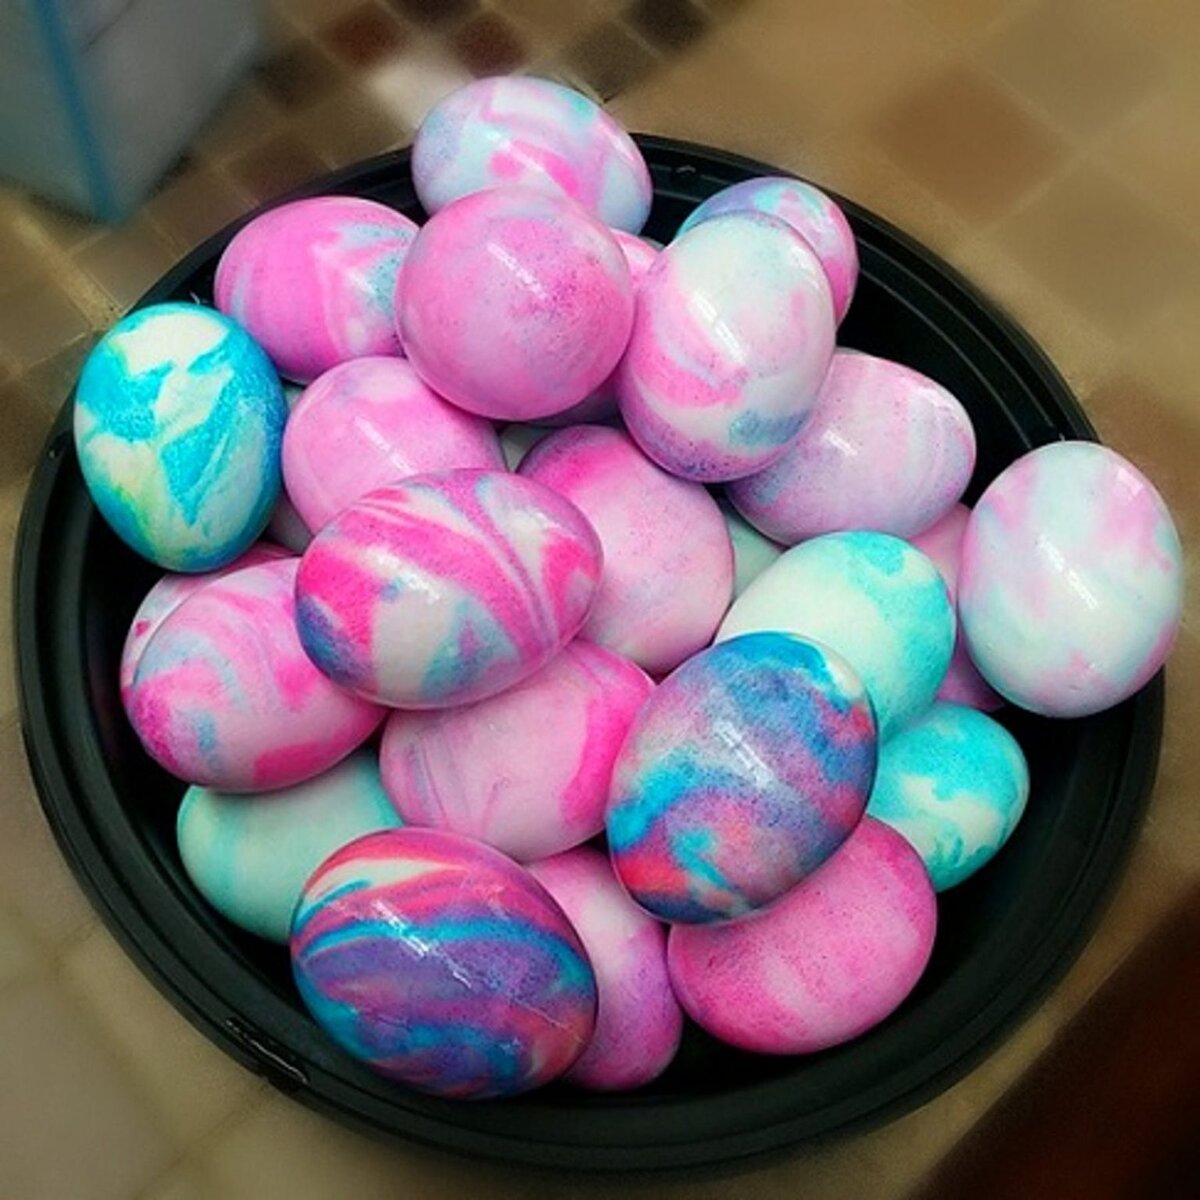 Окраска яиц на пасху. Окрашивание пасхальных яиц. Способы окрашивания яиц на Пасху. Необычные яйца на Пасху. Окрашивание яиц пищевыми красителями.